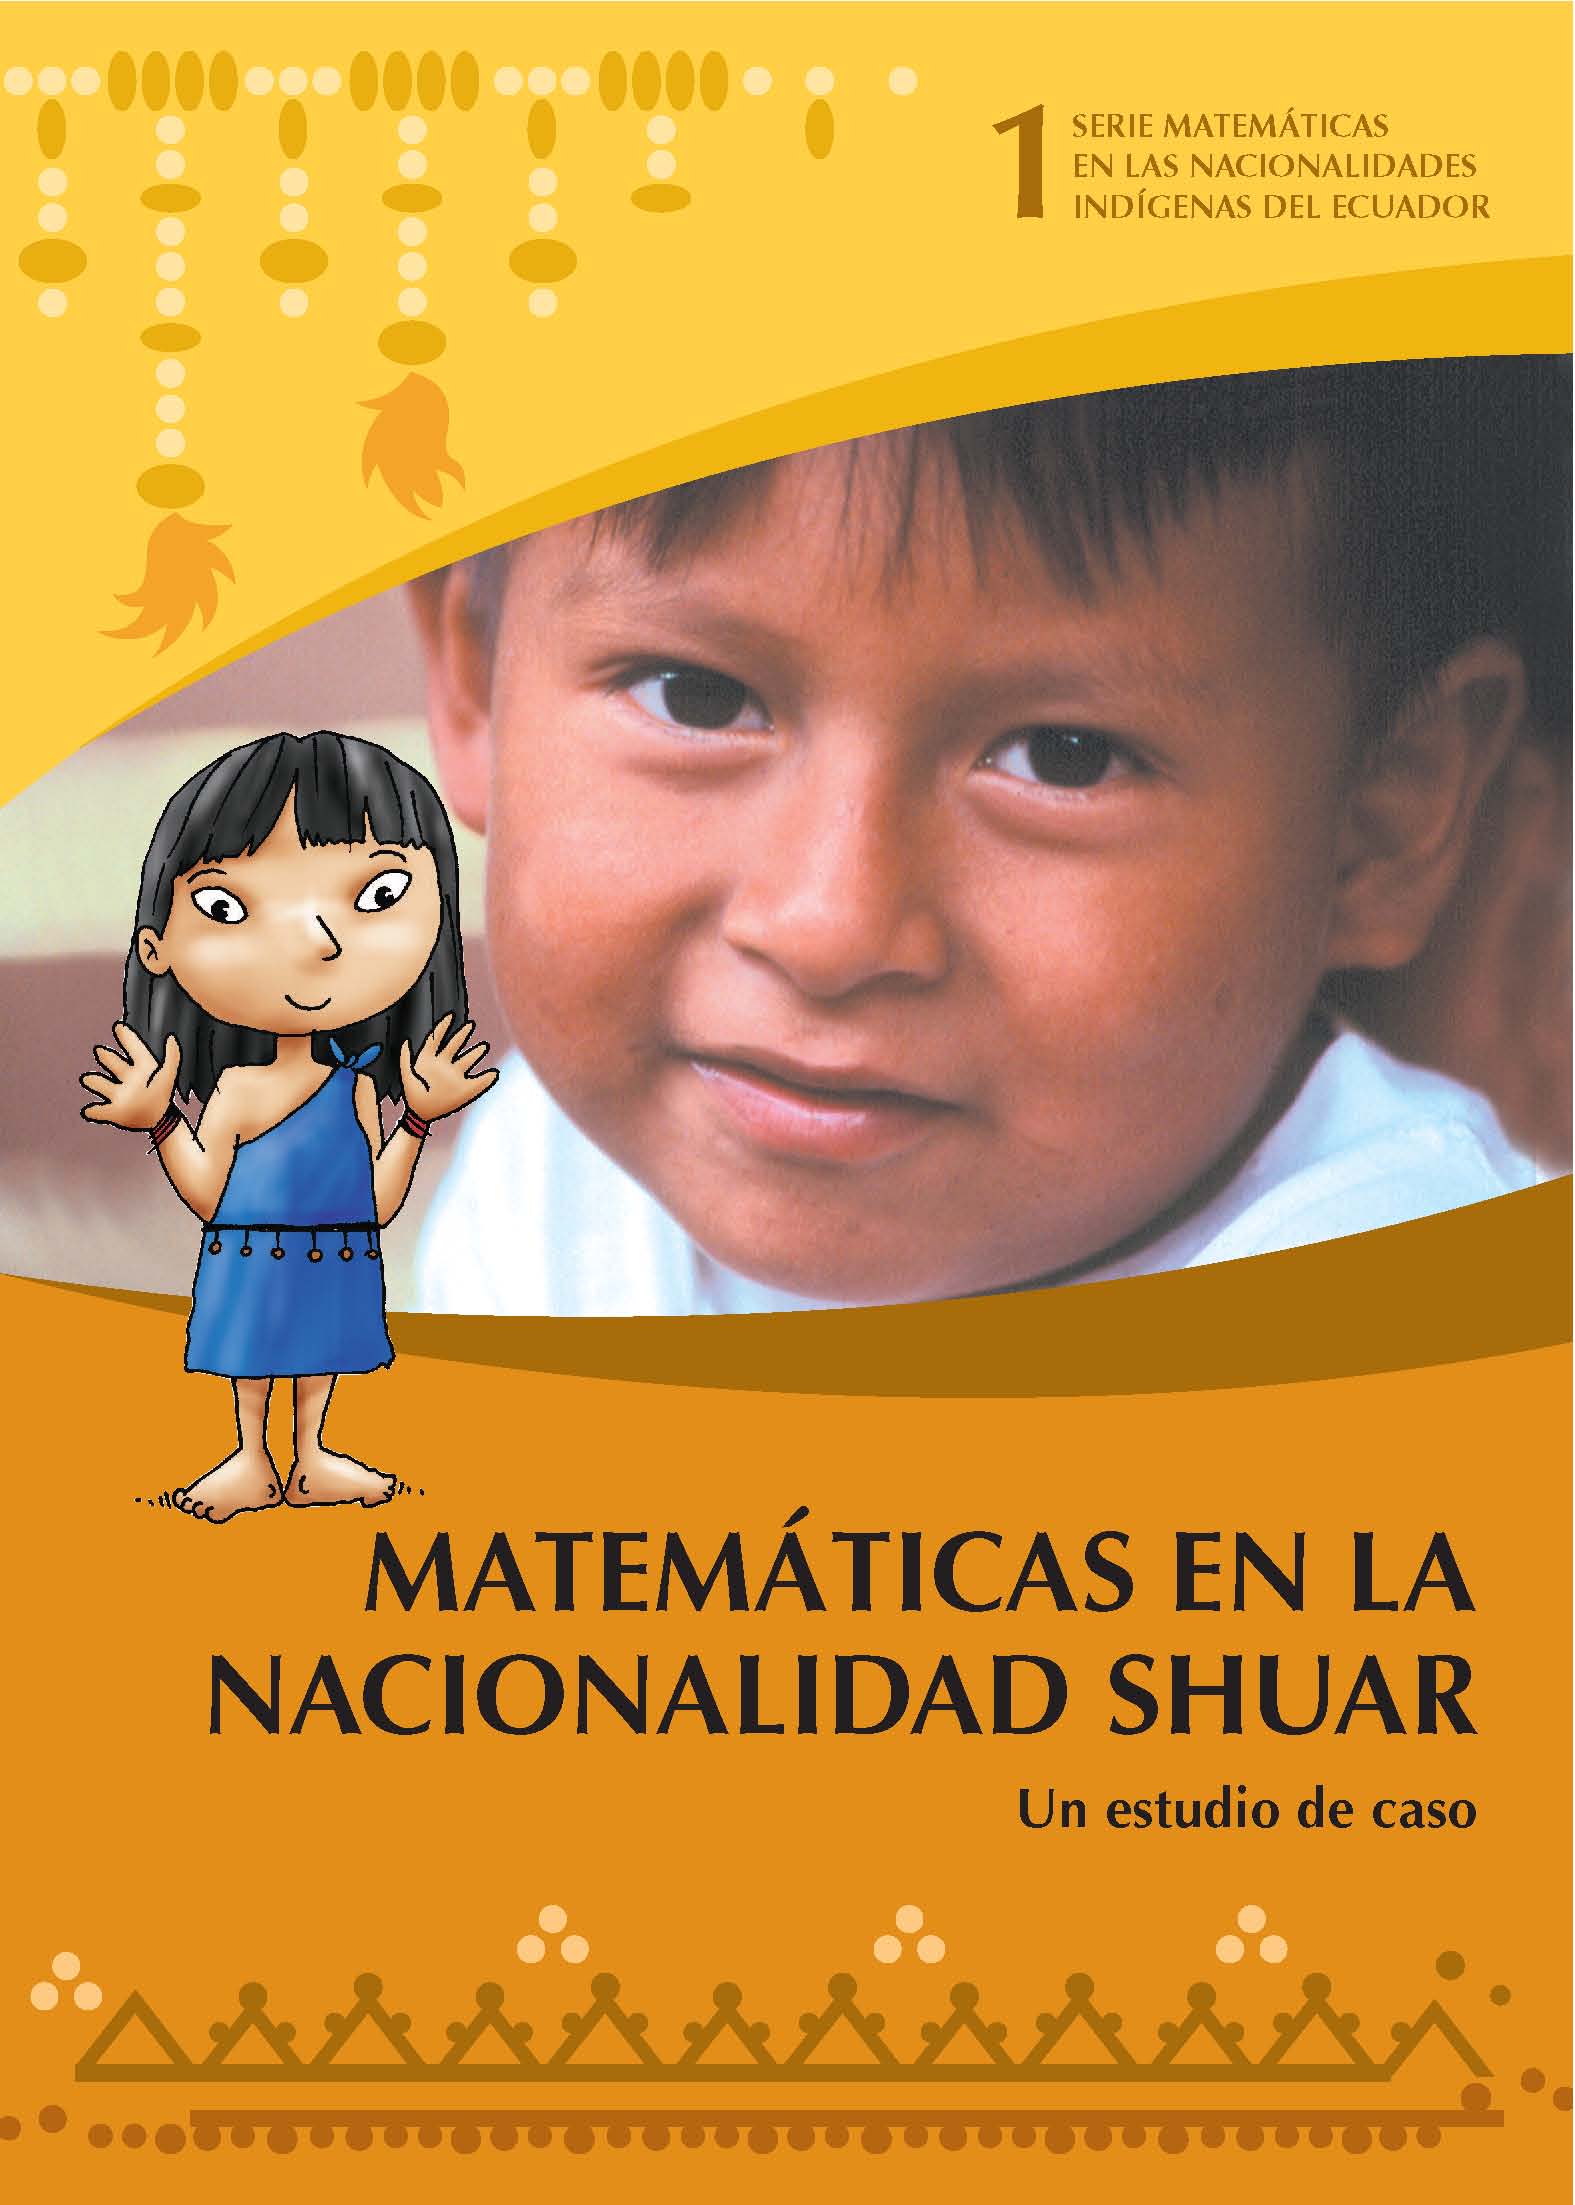 Taisha, Juanito <br>Matemáticas en la nacionalidad Shuar: un estudio de caso<br/>Quito: UNICEF : DINEIB : Universidad de Cuenca. 2006. 28 páginas 